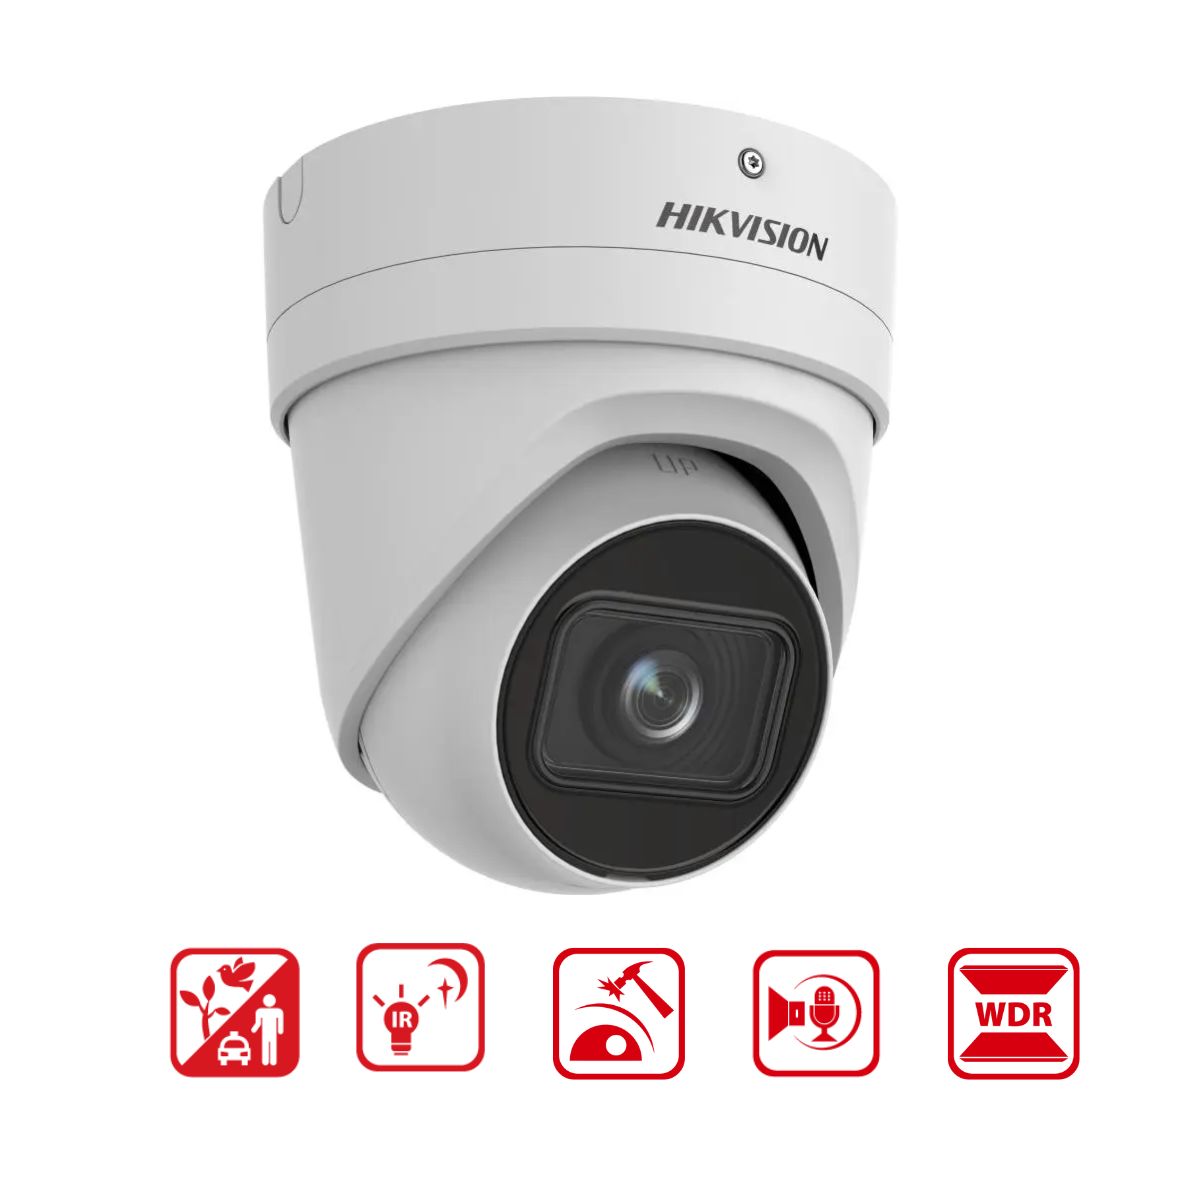 Camera Dome IP Zoom Hikvision DS-2CD2H66G2-IZS (C) 6MP, chống báo động giả, hồng ngoại 40m, phân biệt người và xe